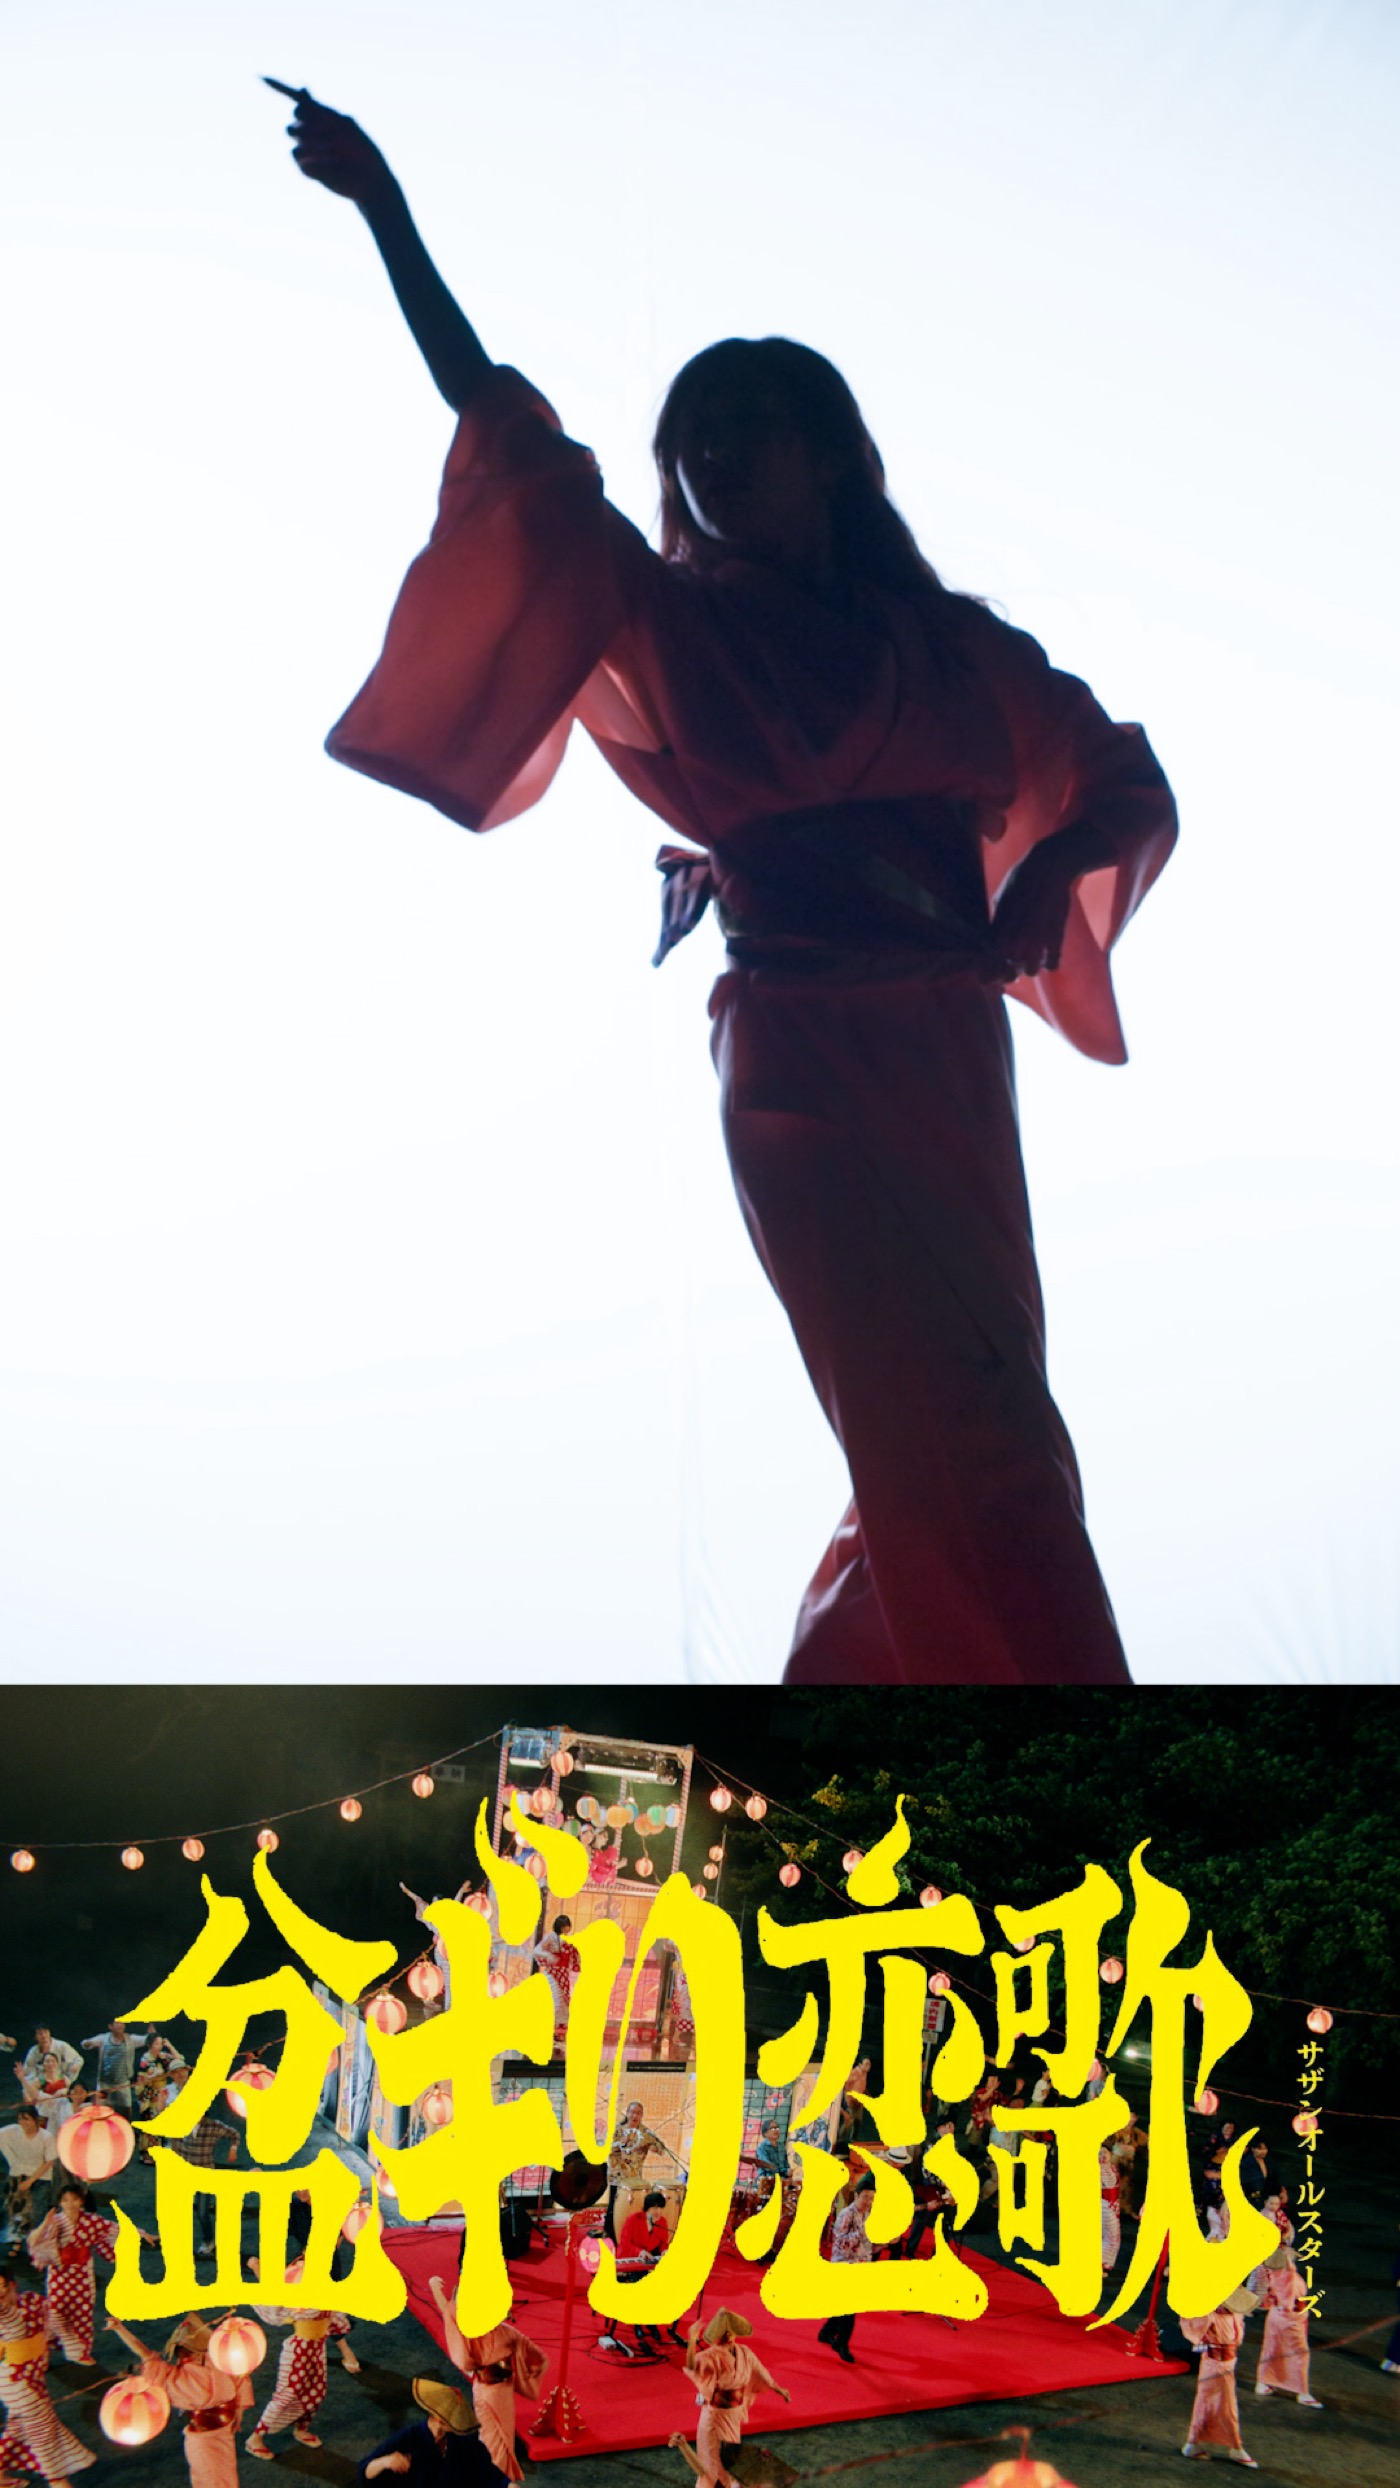 サザンオールスターズが新曲「盆ギリ恋歌」MVの“盆ギリ踊り”を定点撮影した縦型ショート動画を公開